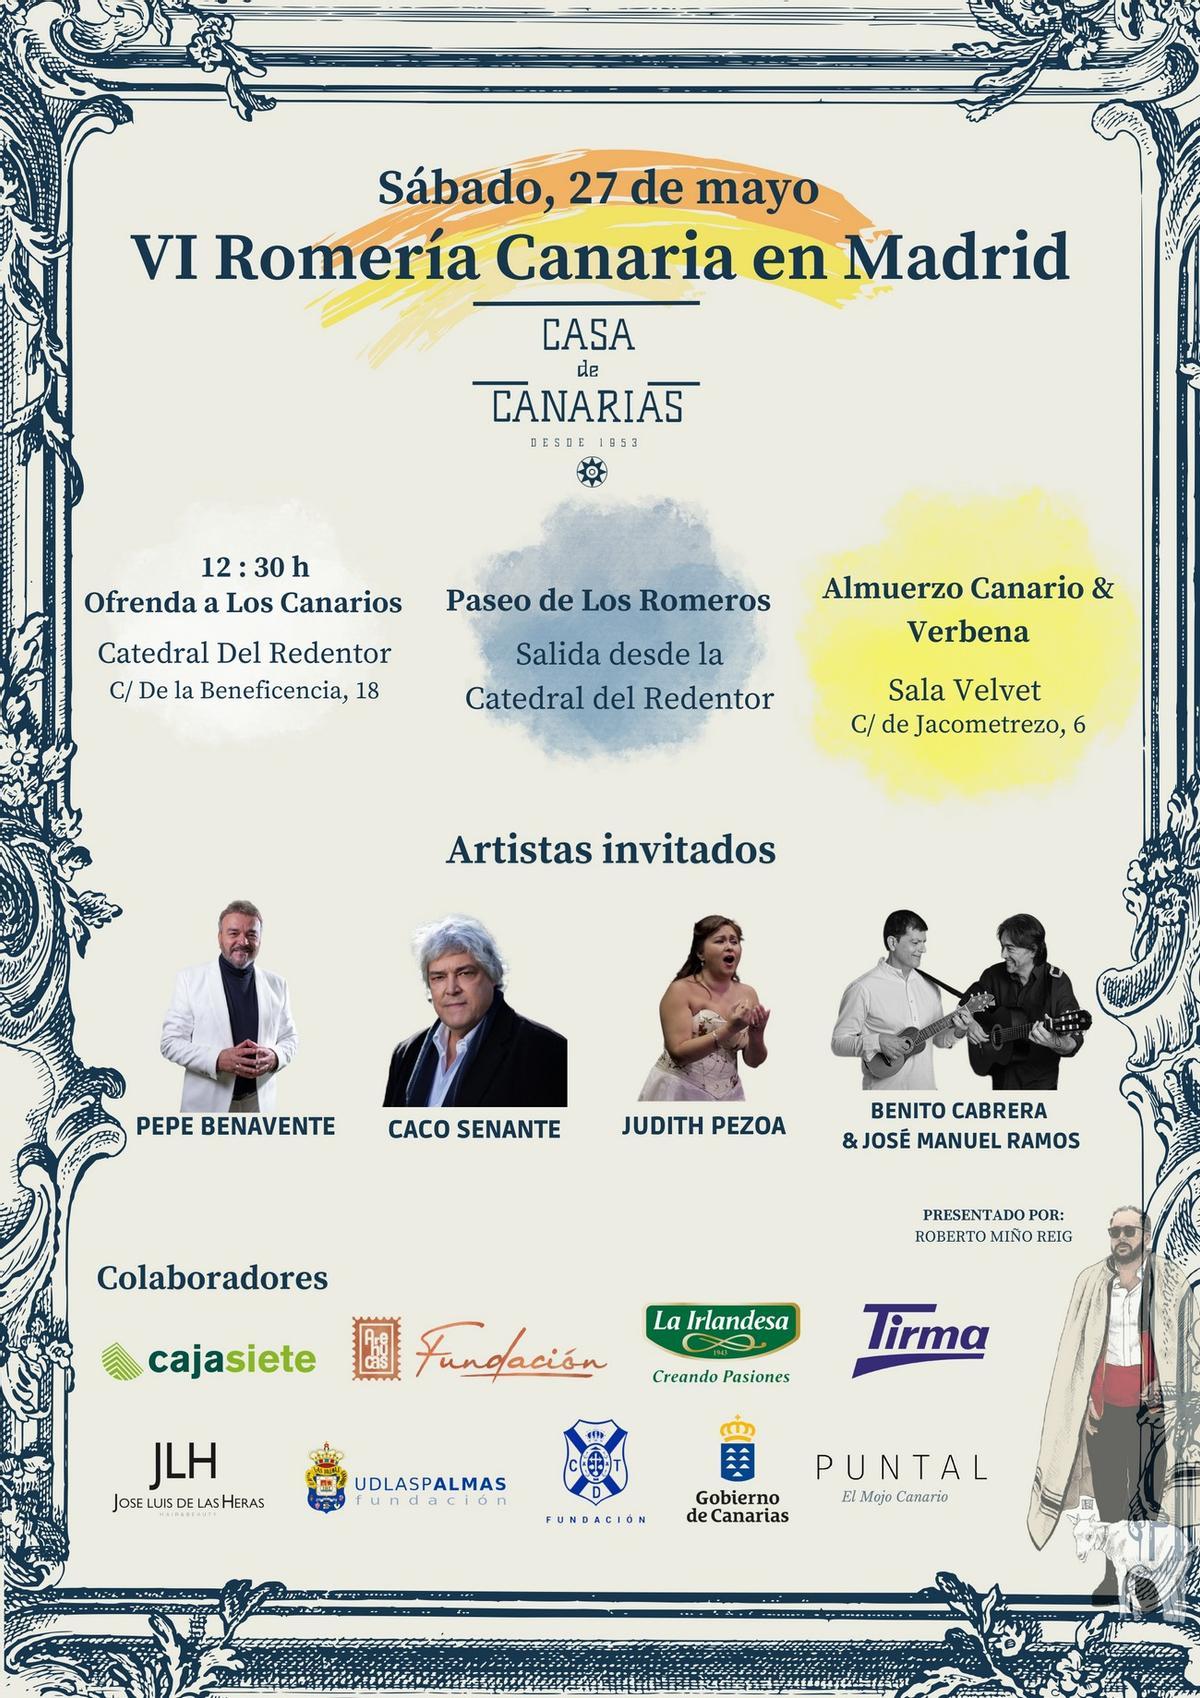 Cartel anunciador de la VI Romería Canaria en Madrid.